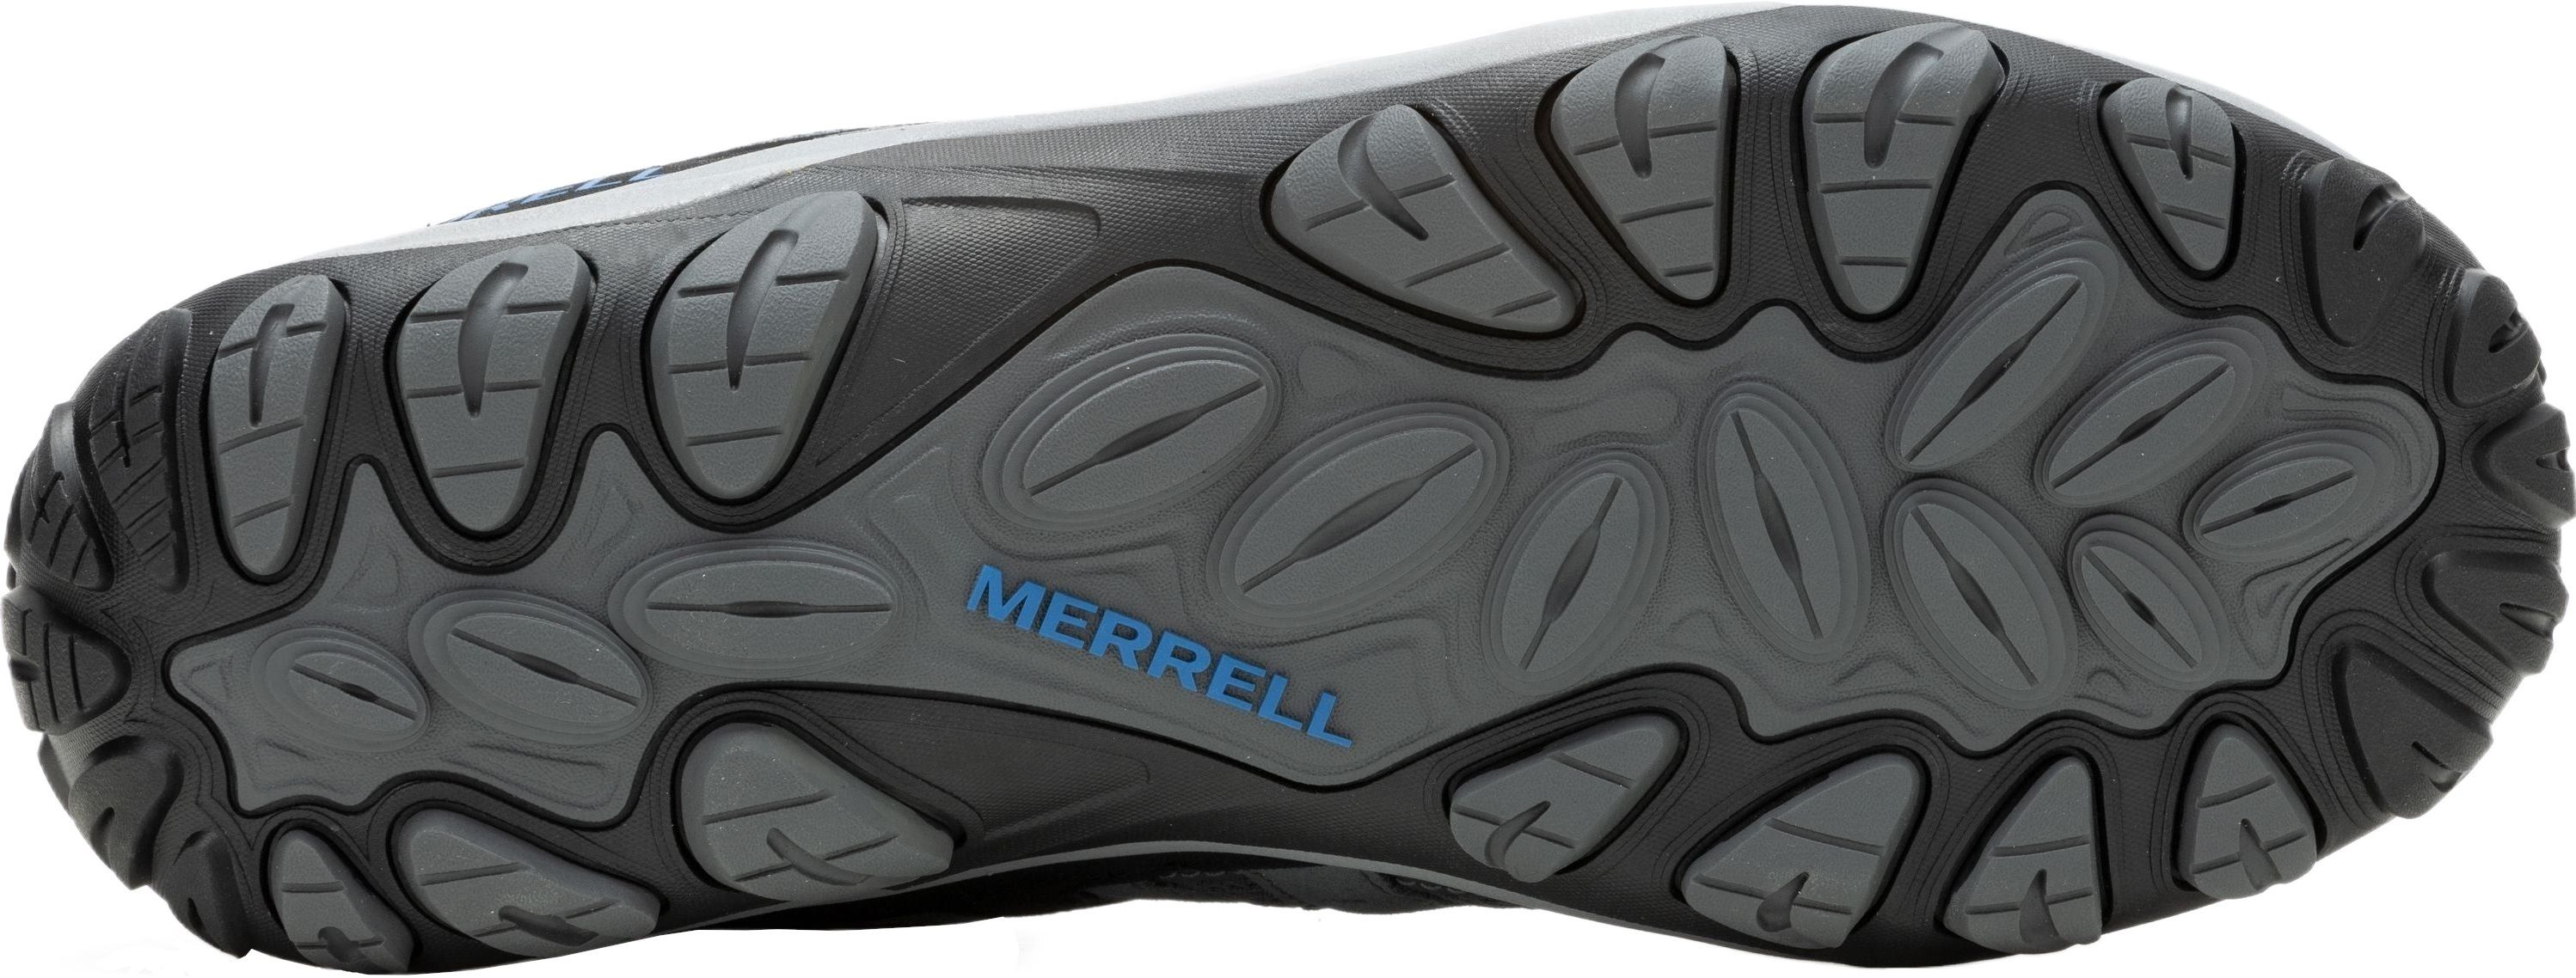 Кроссовки мужские Merrell Accentor 3 Rock/Blue 41 серый/синий фото 6